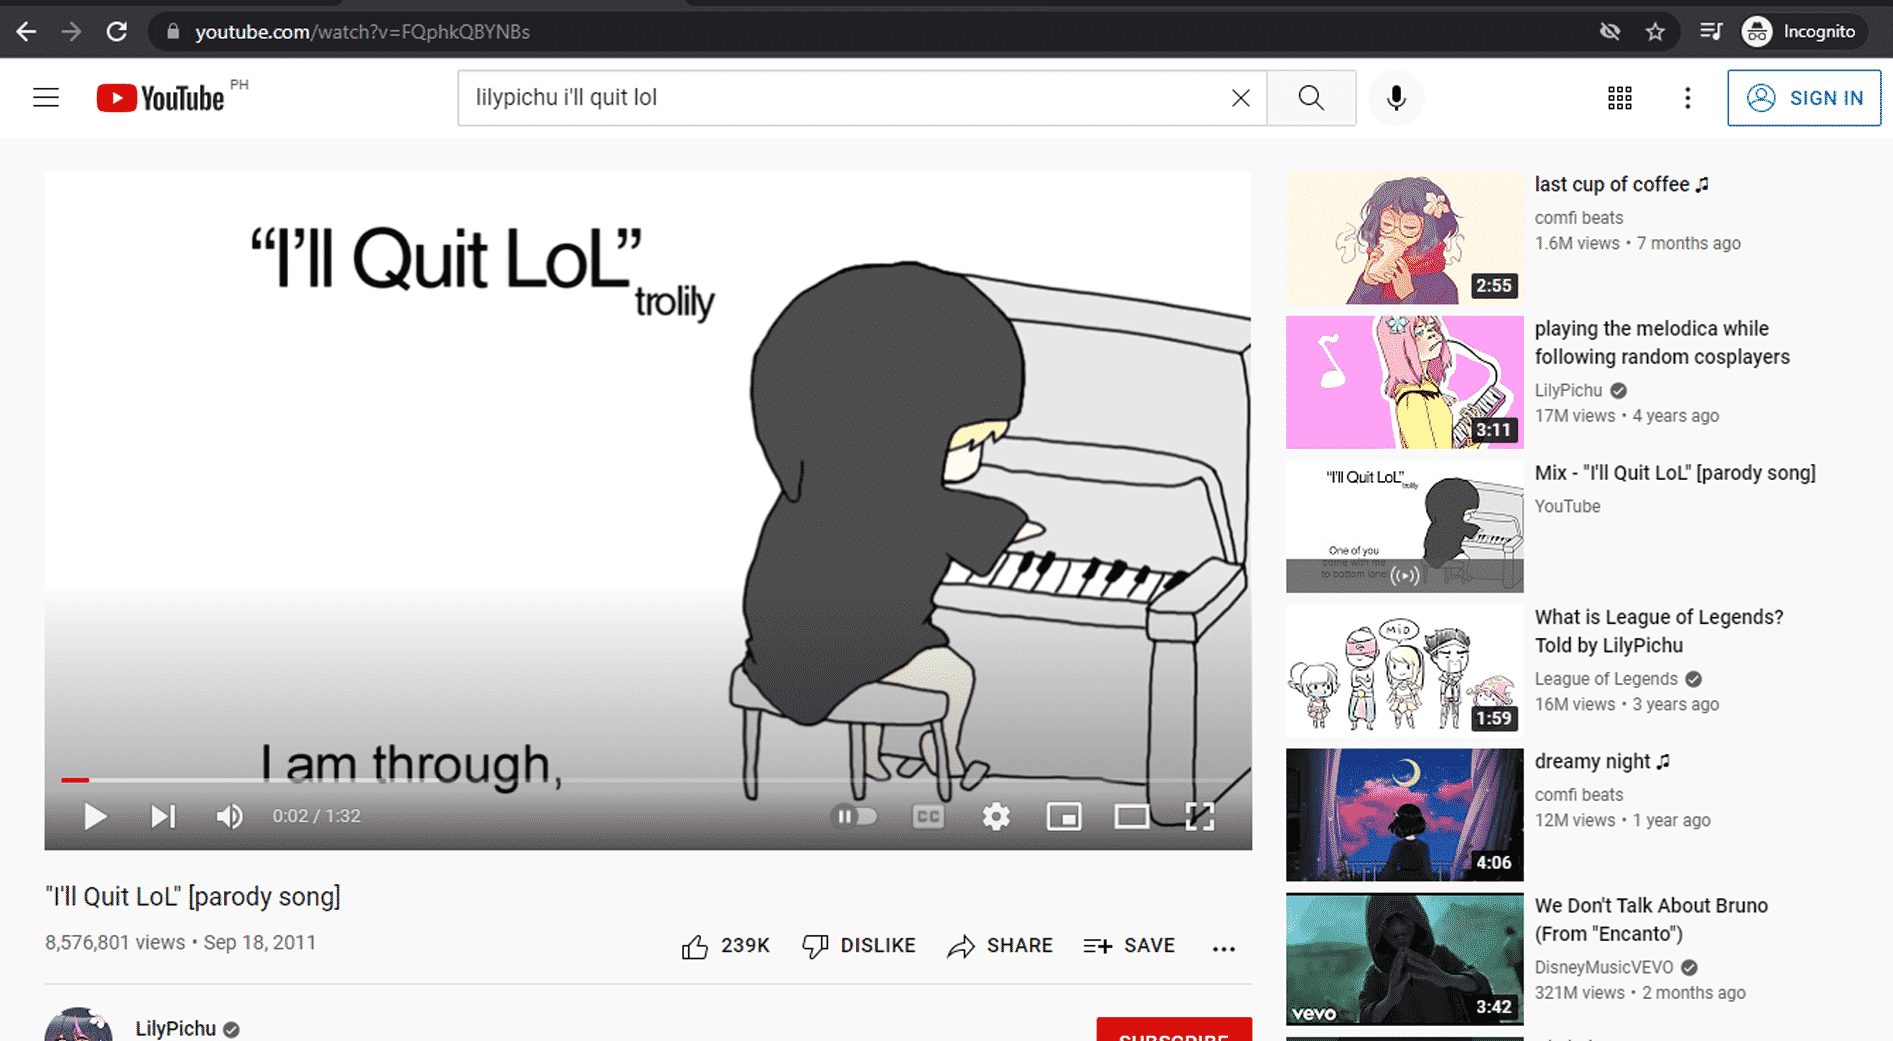 I'll Quit LoL | Source: YouTube.com